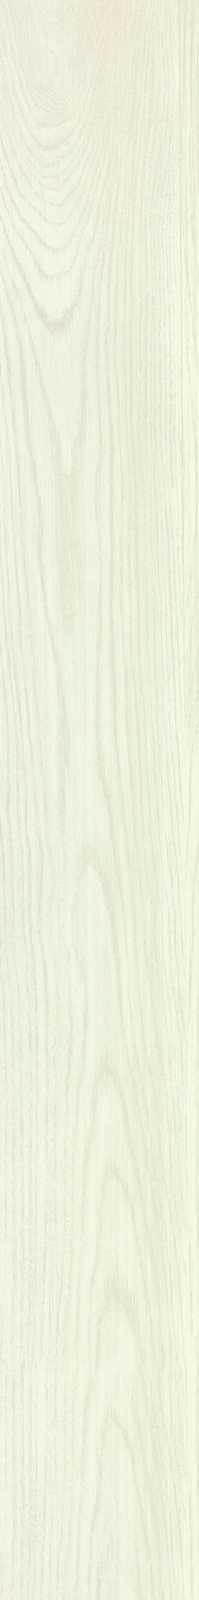 Marazzi Treverk Bodenfliese white 15x120cm